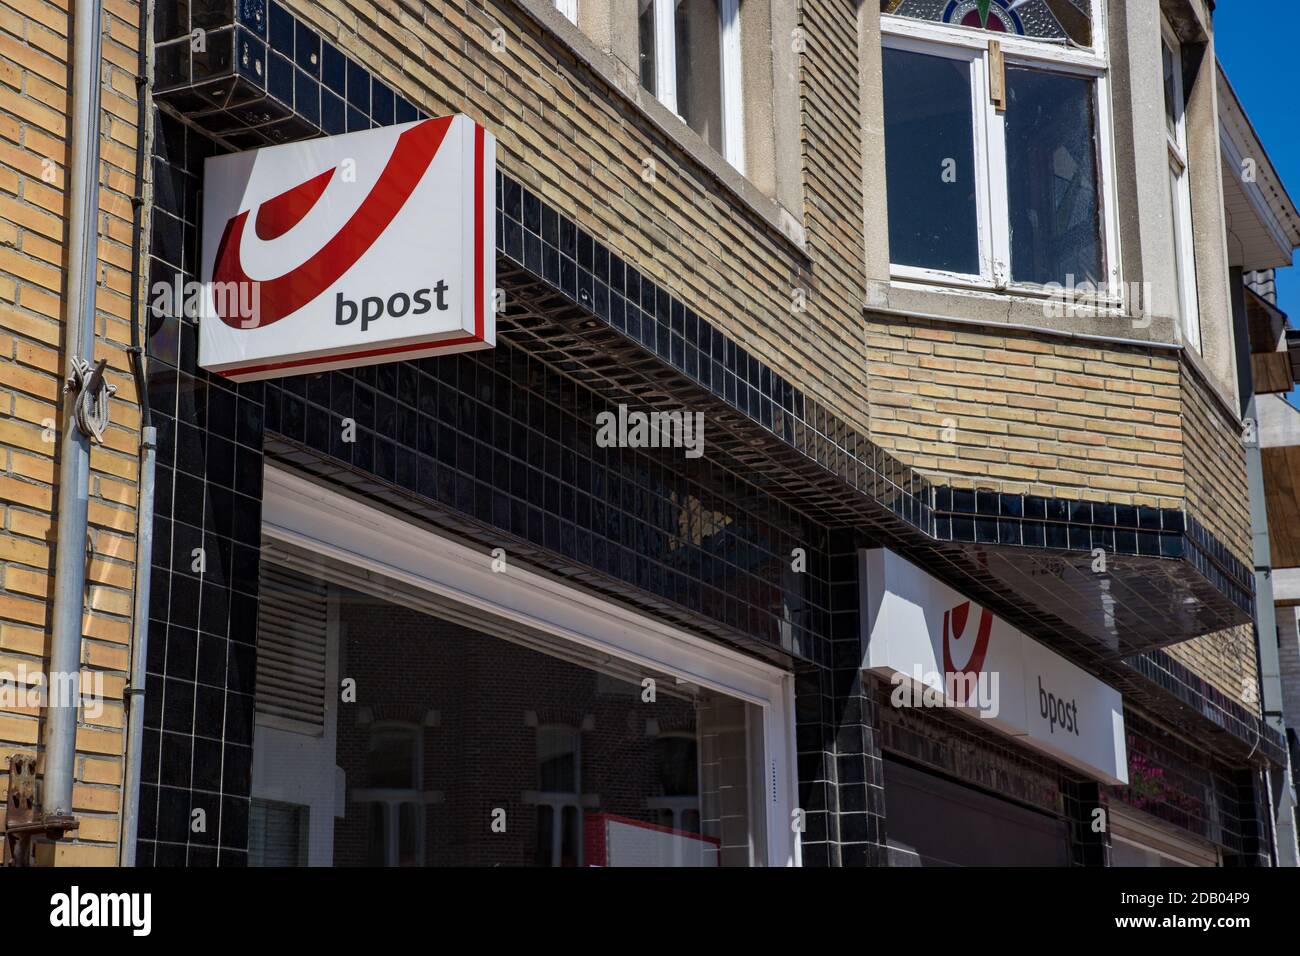 Illustration picture shows the bpost post office in Ruiselede, Thursday 25 June 2020. BELGA PHOTO KURT DESPLENTER Stock Photo